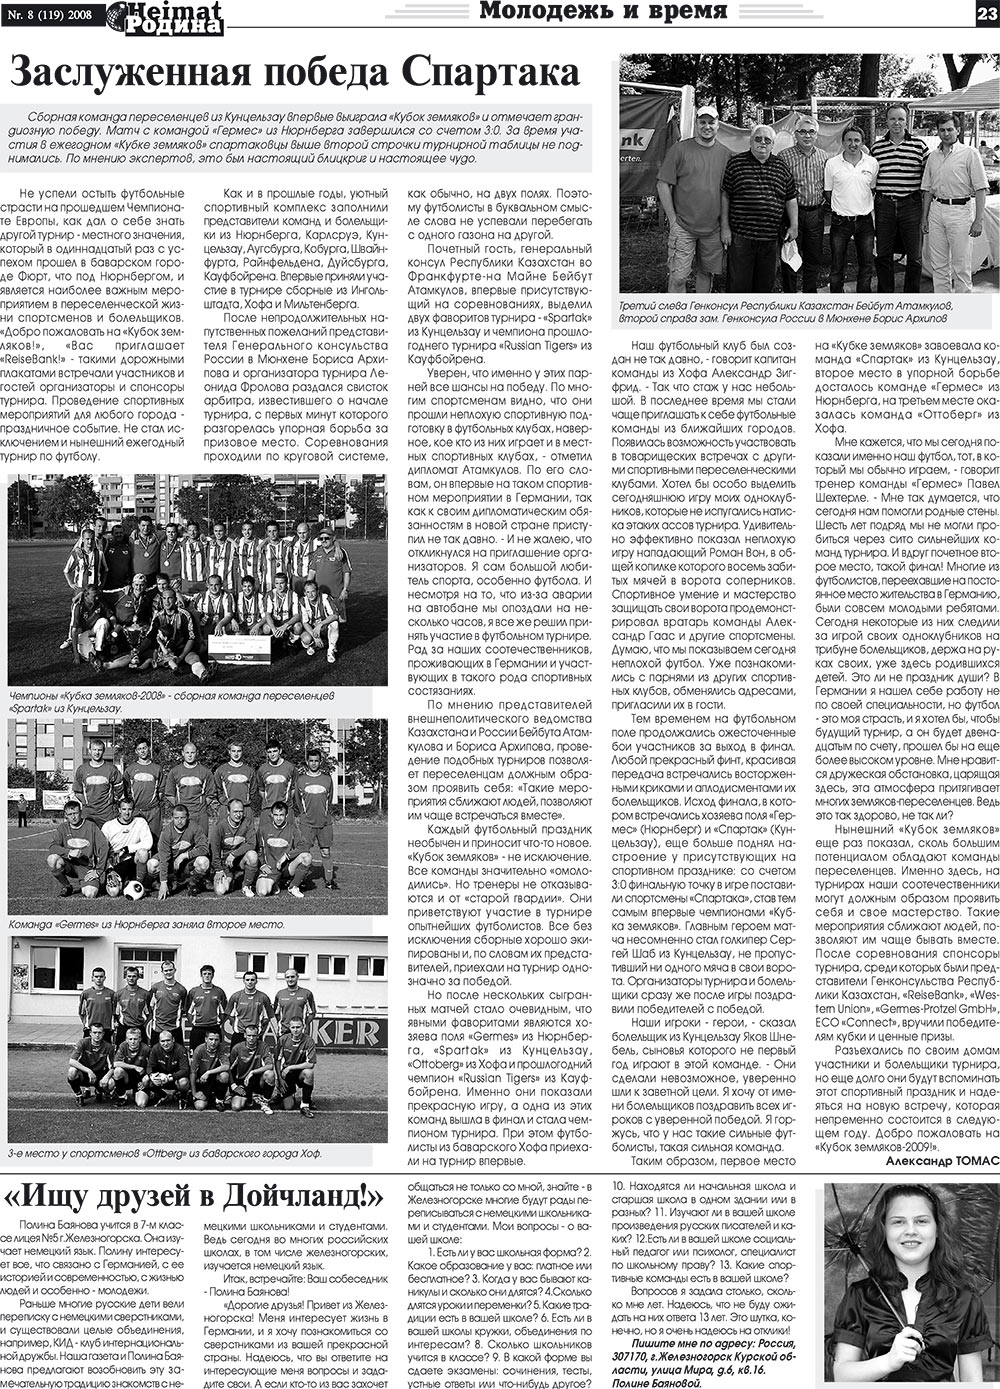 Heimat-Родина (газета). 2008 год, номер 8, стр. 23